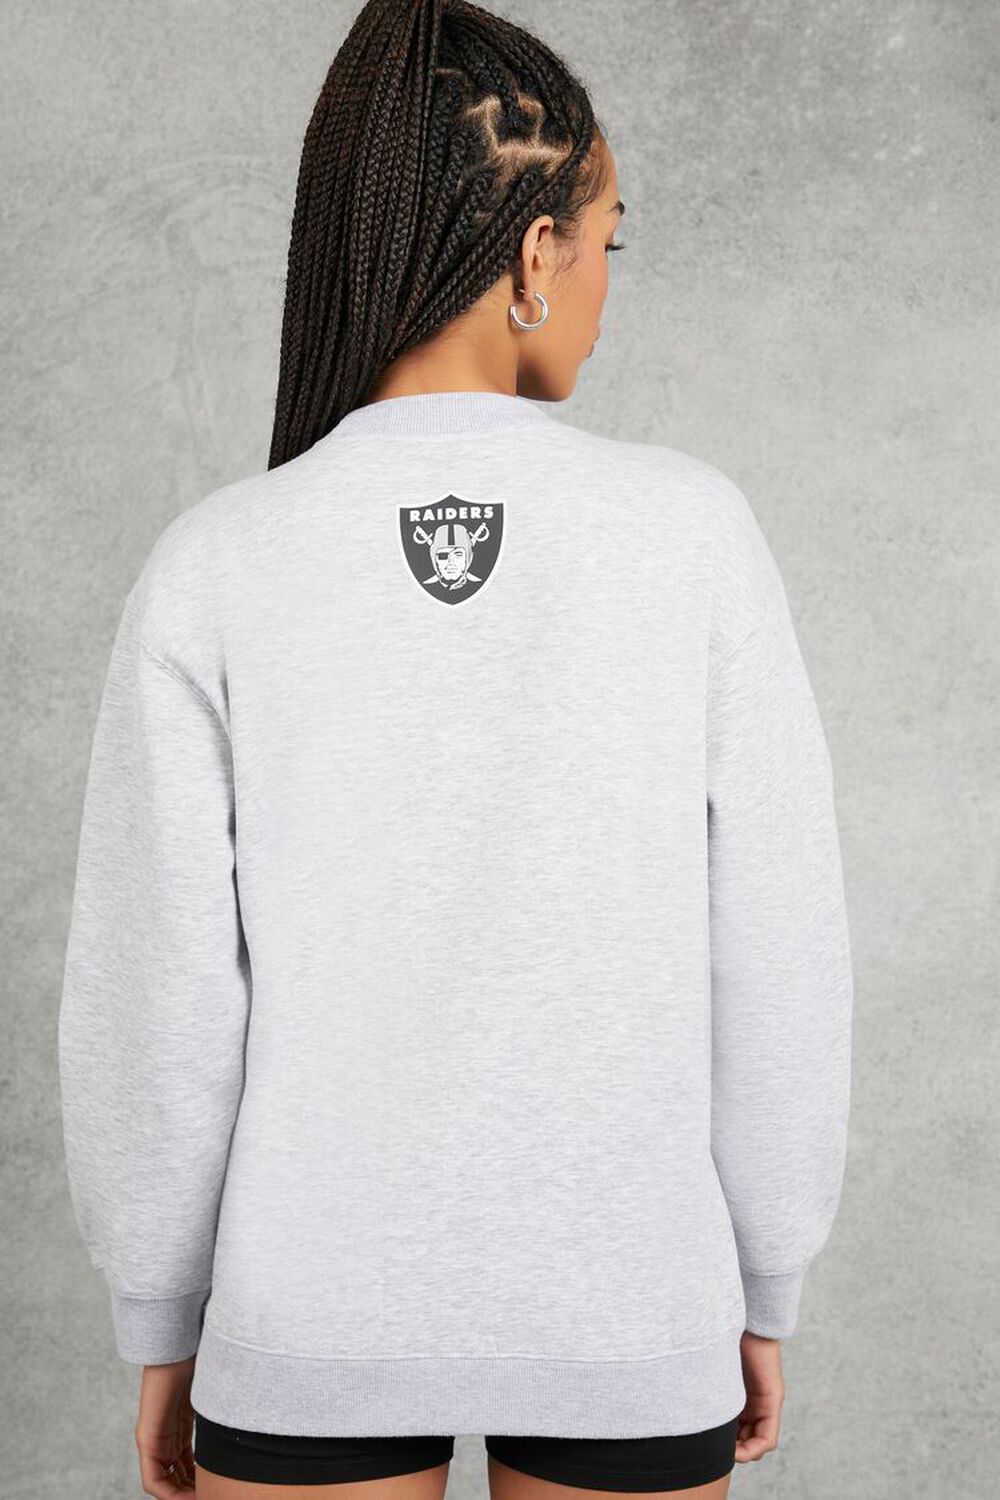 Las Vegas Raiders Women's Hooded Crop Sweatshirt - Black/White/Grey